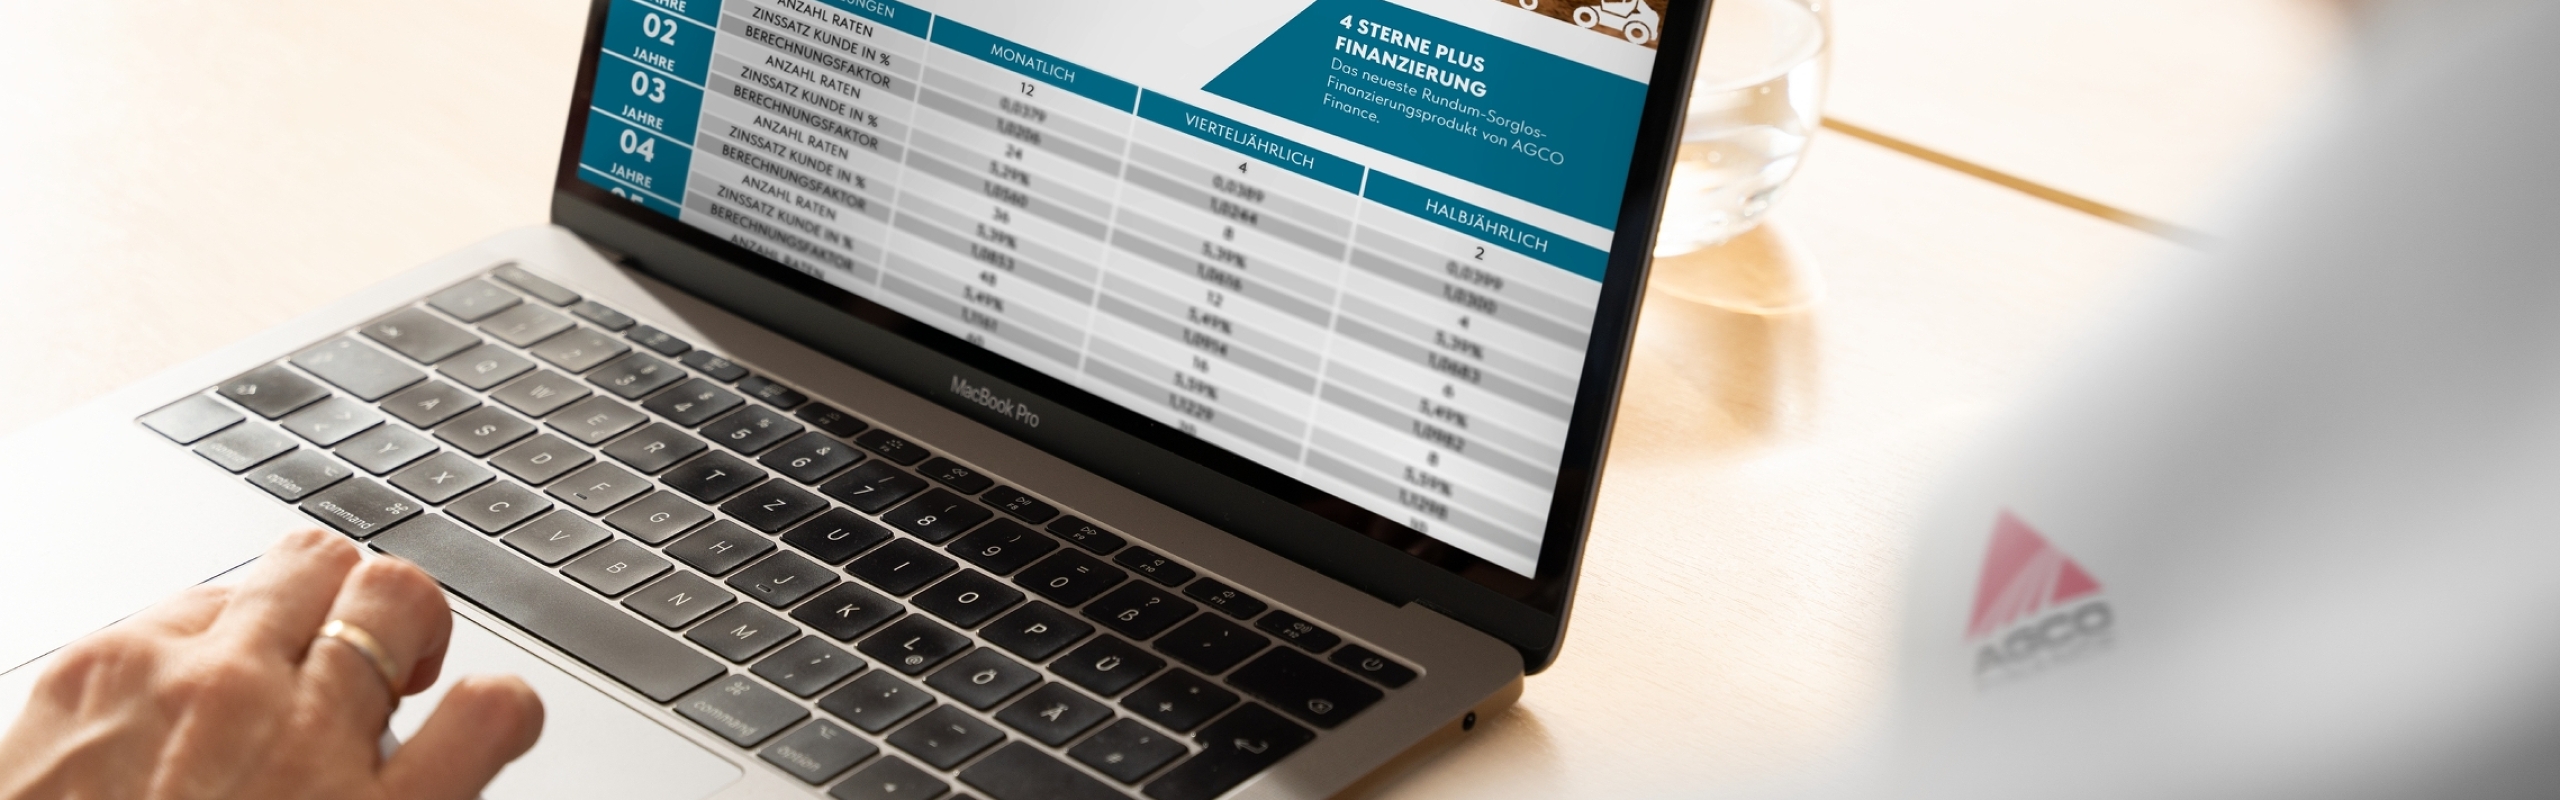 Laptop eines Fendt Händlers mit Finanzierungsmöglichkeiten über AGCO Finance